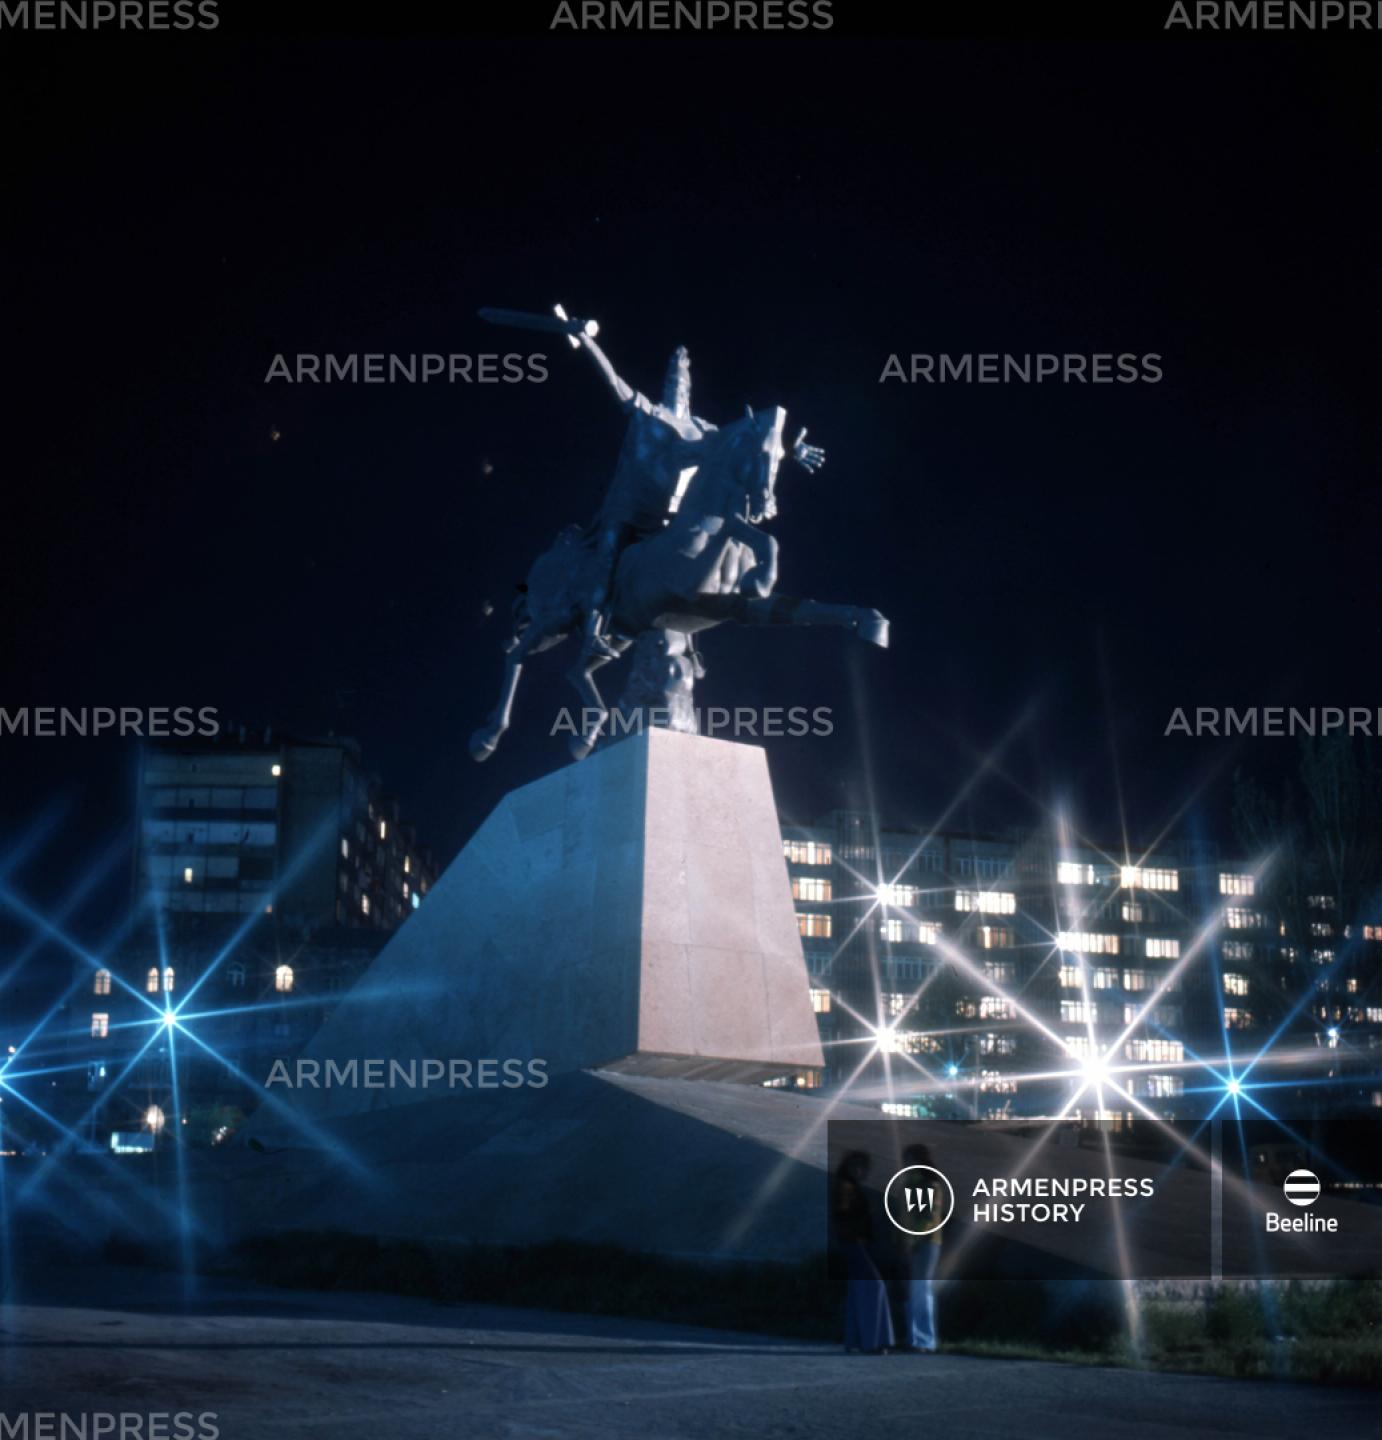 Վարդան Մամիկոնյանի հուշարձանը Երևանում